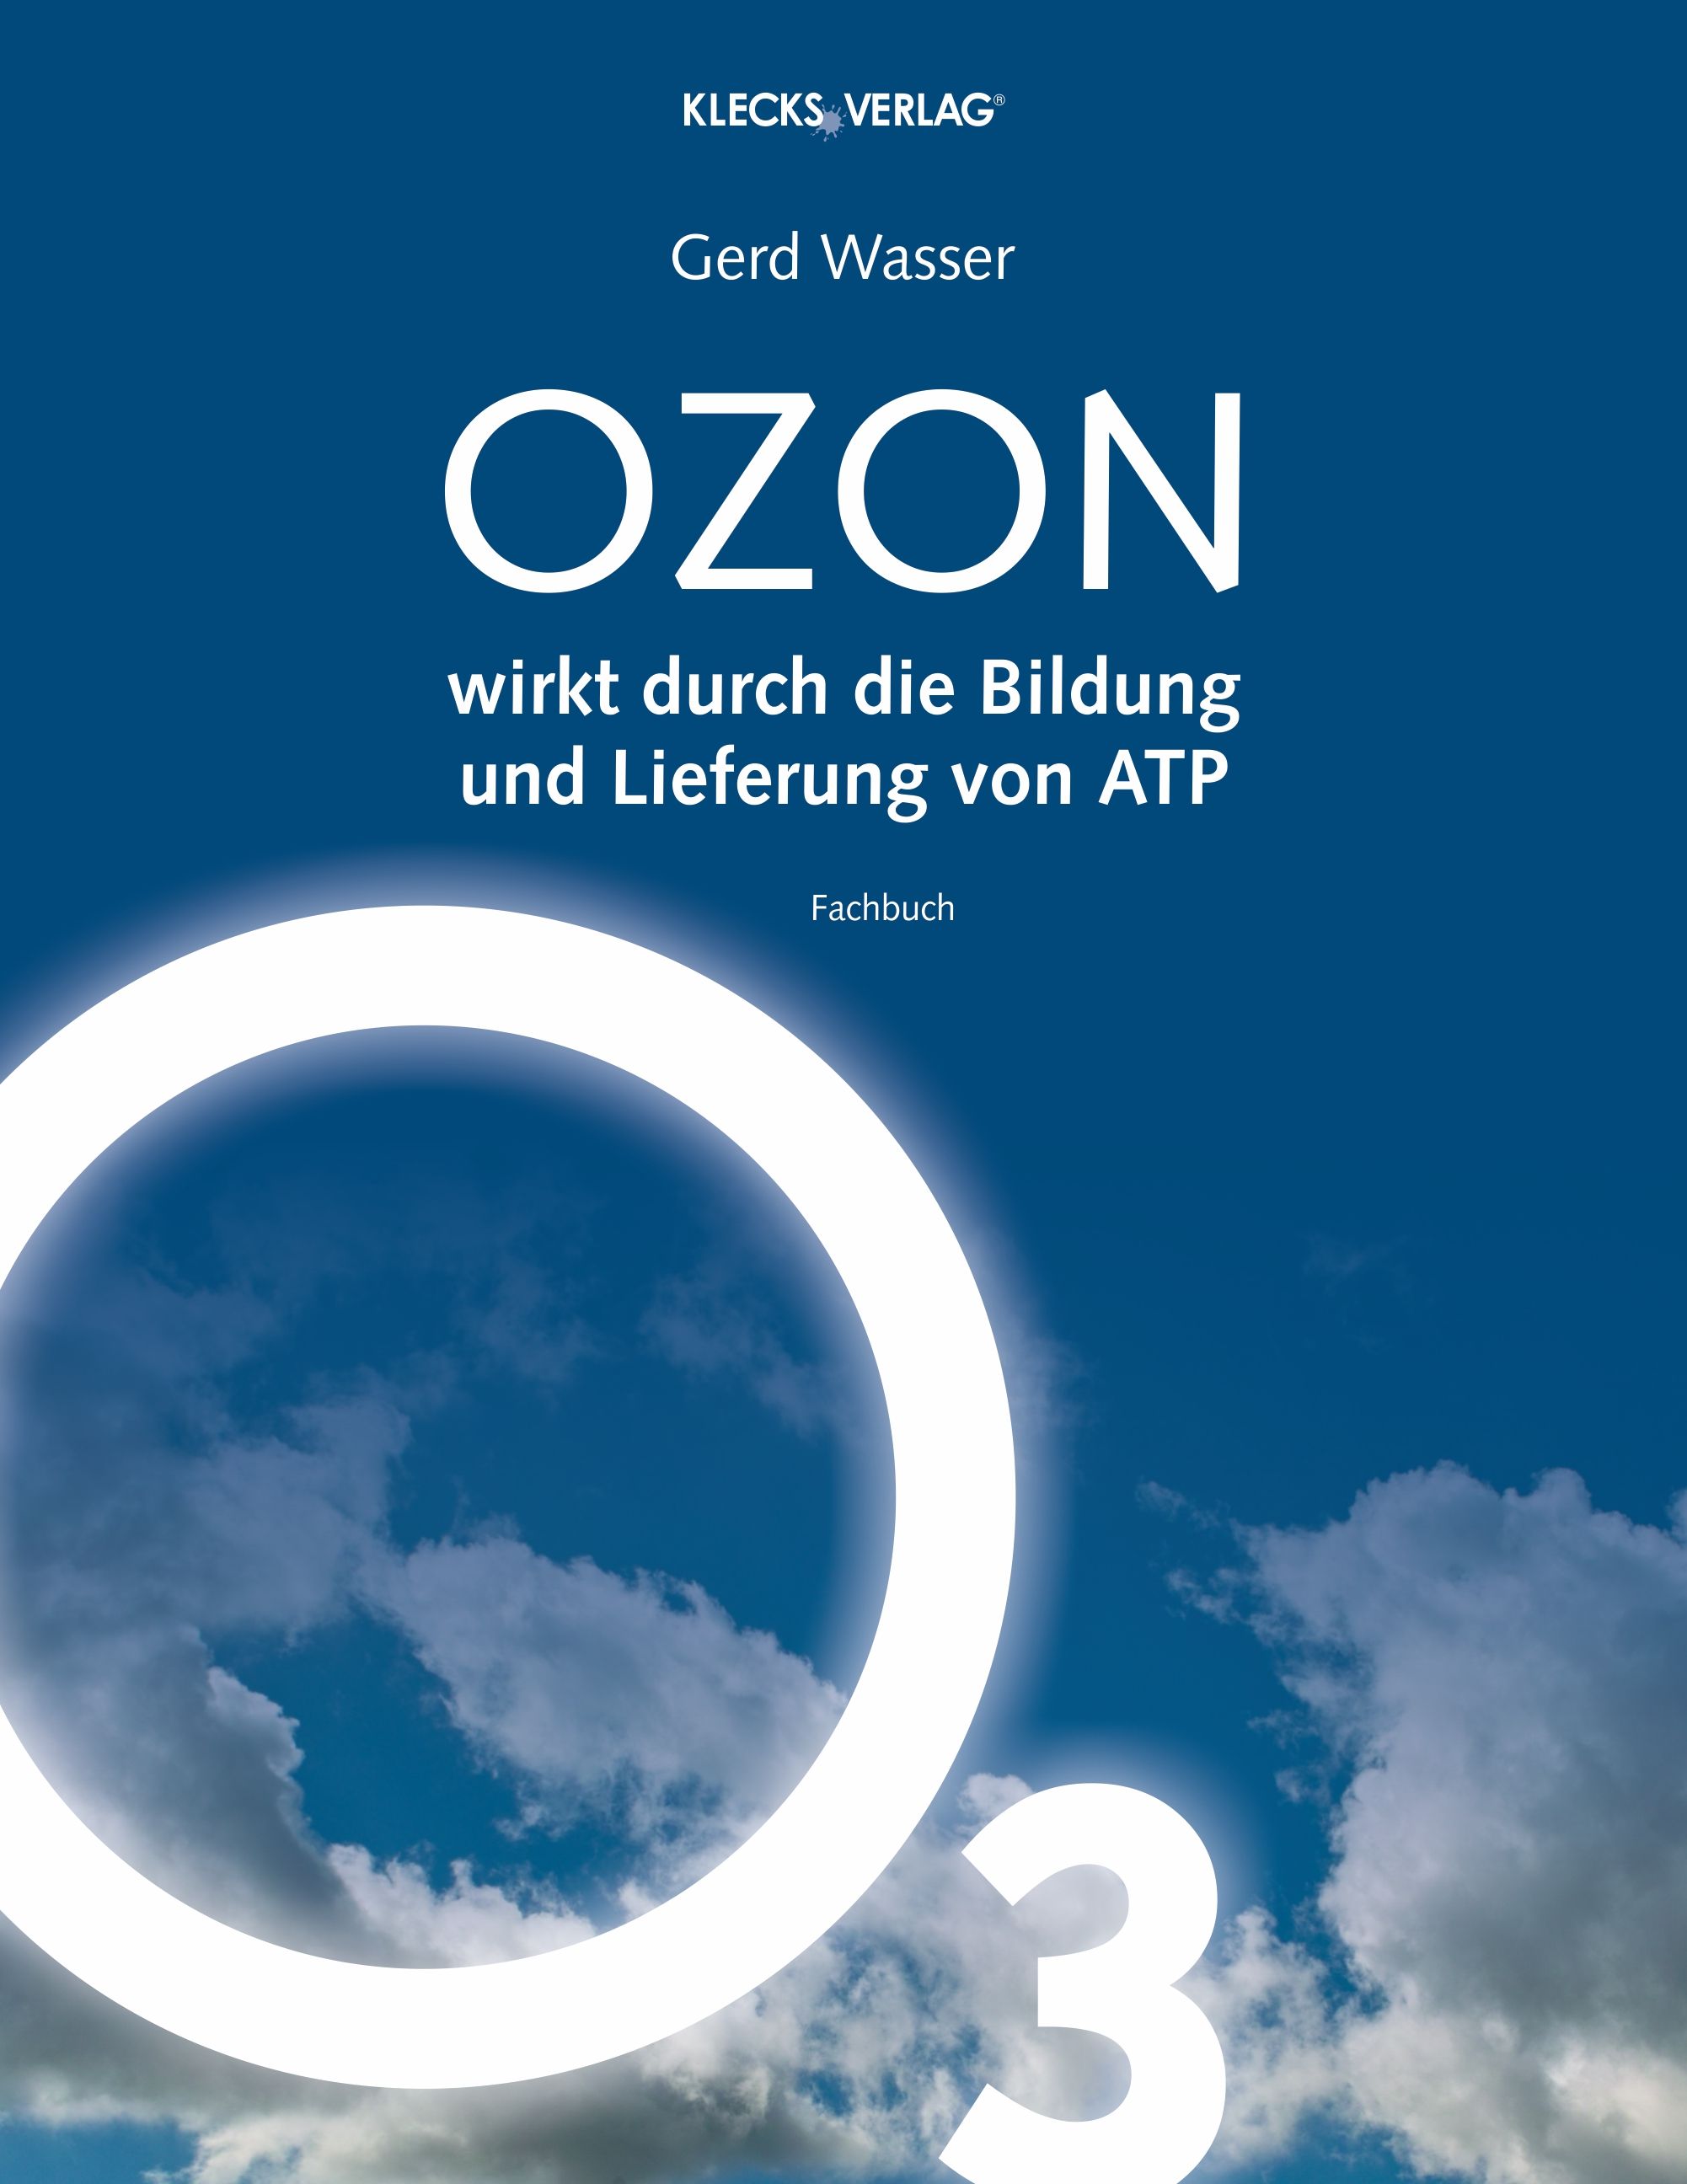 OZON wirkt durch die Bildung und Lieferung von ATP